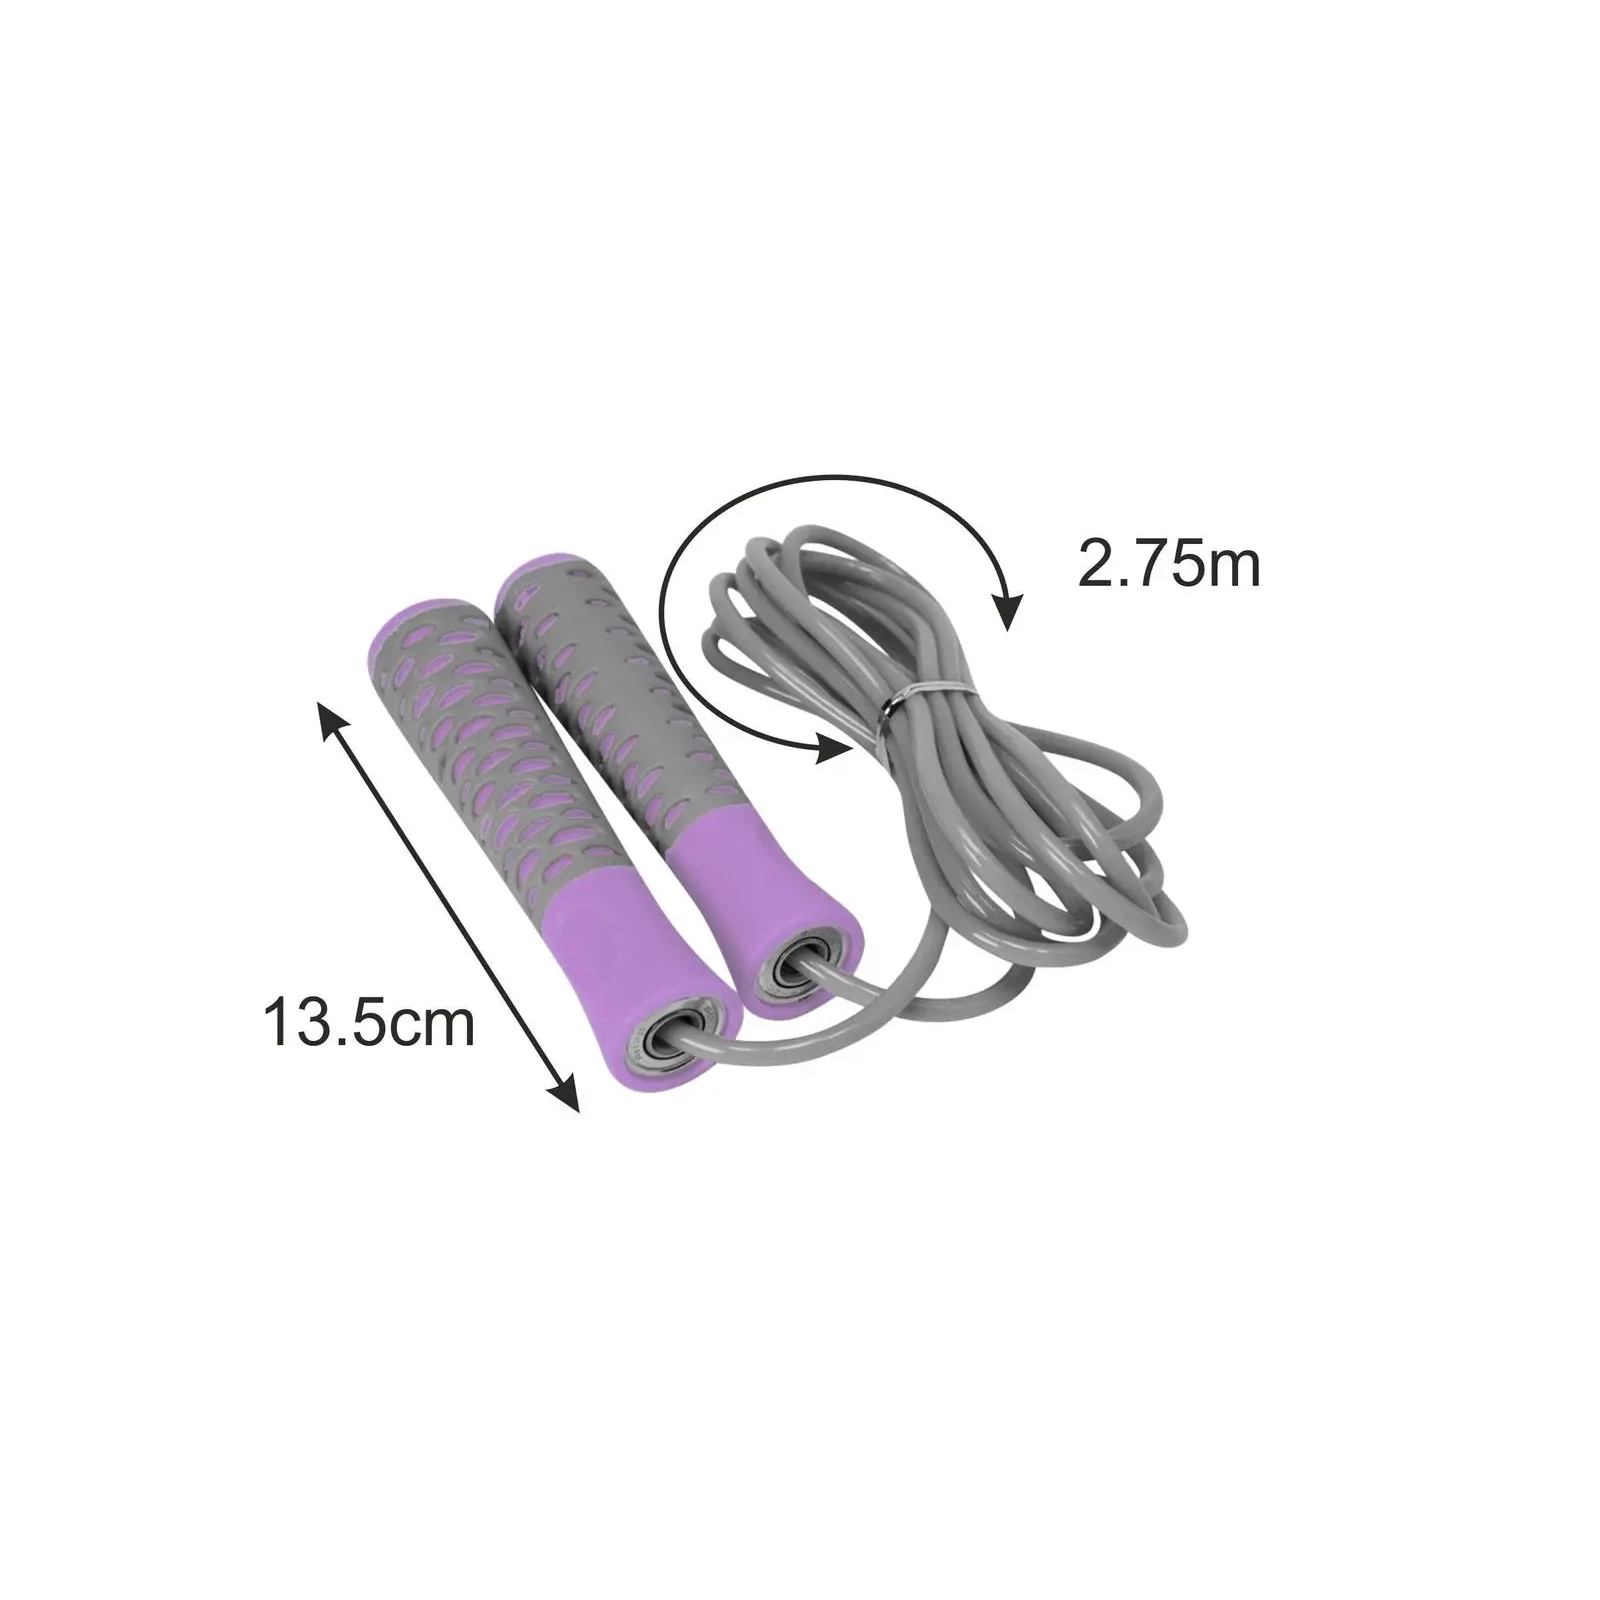 Скакалка PowerPlay 4206 Cіро-фіолетова (PP_4206_Grey/Violet) изображение 5